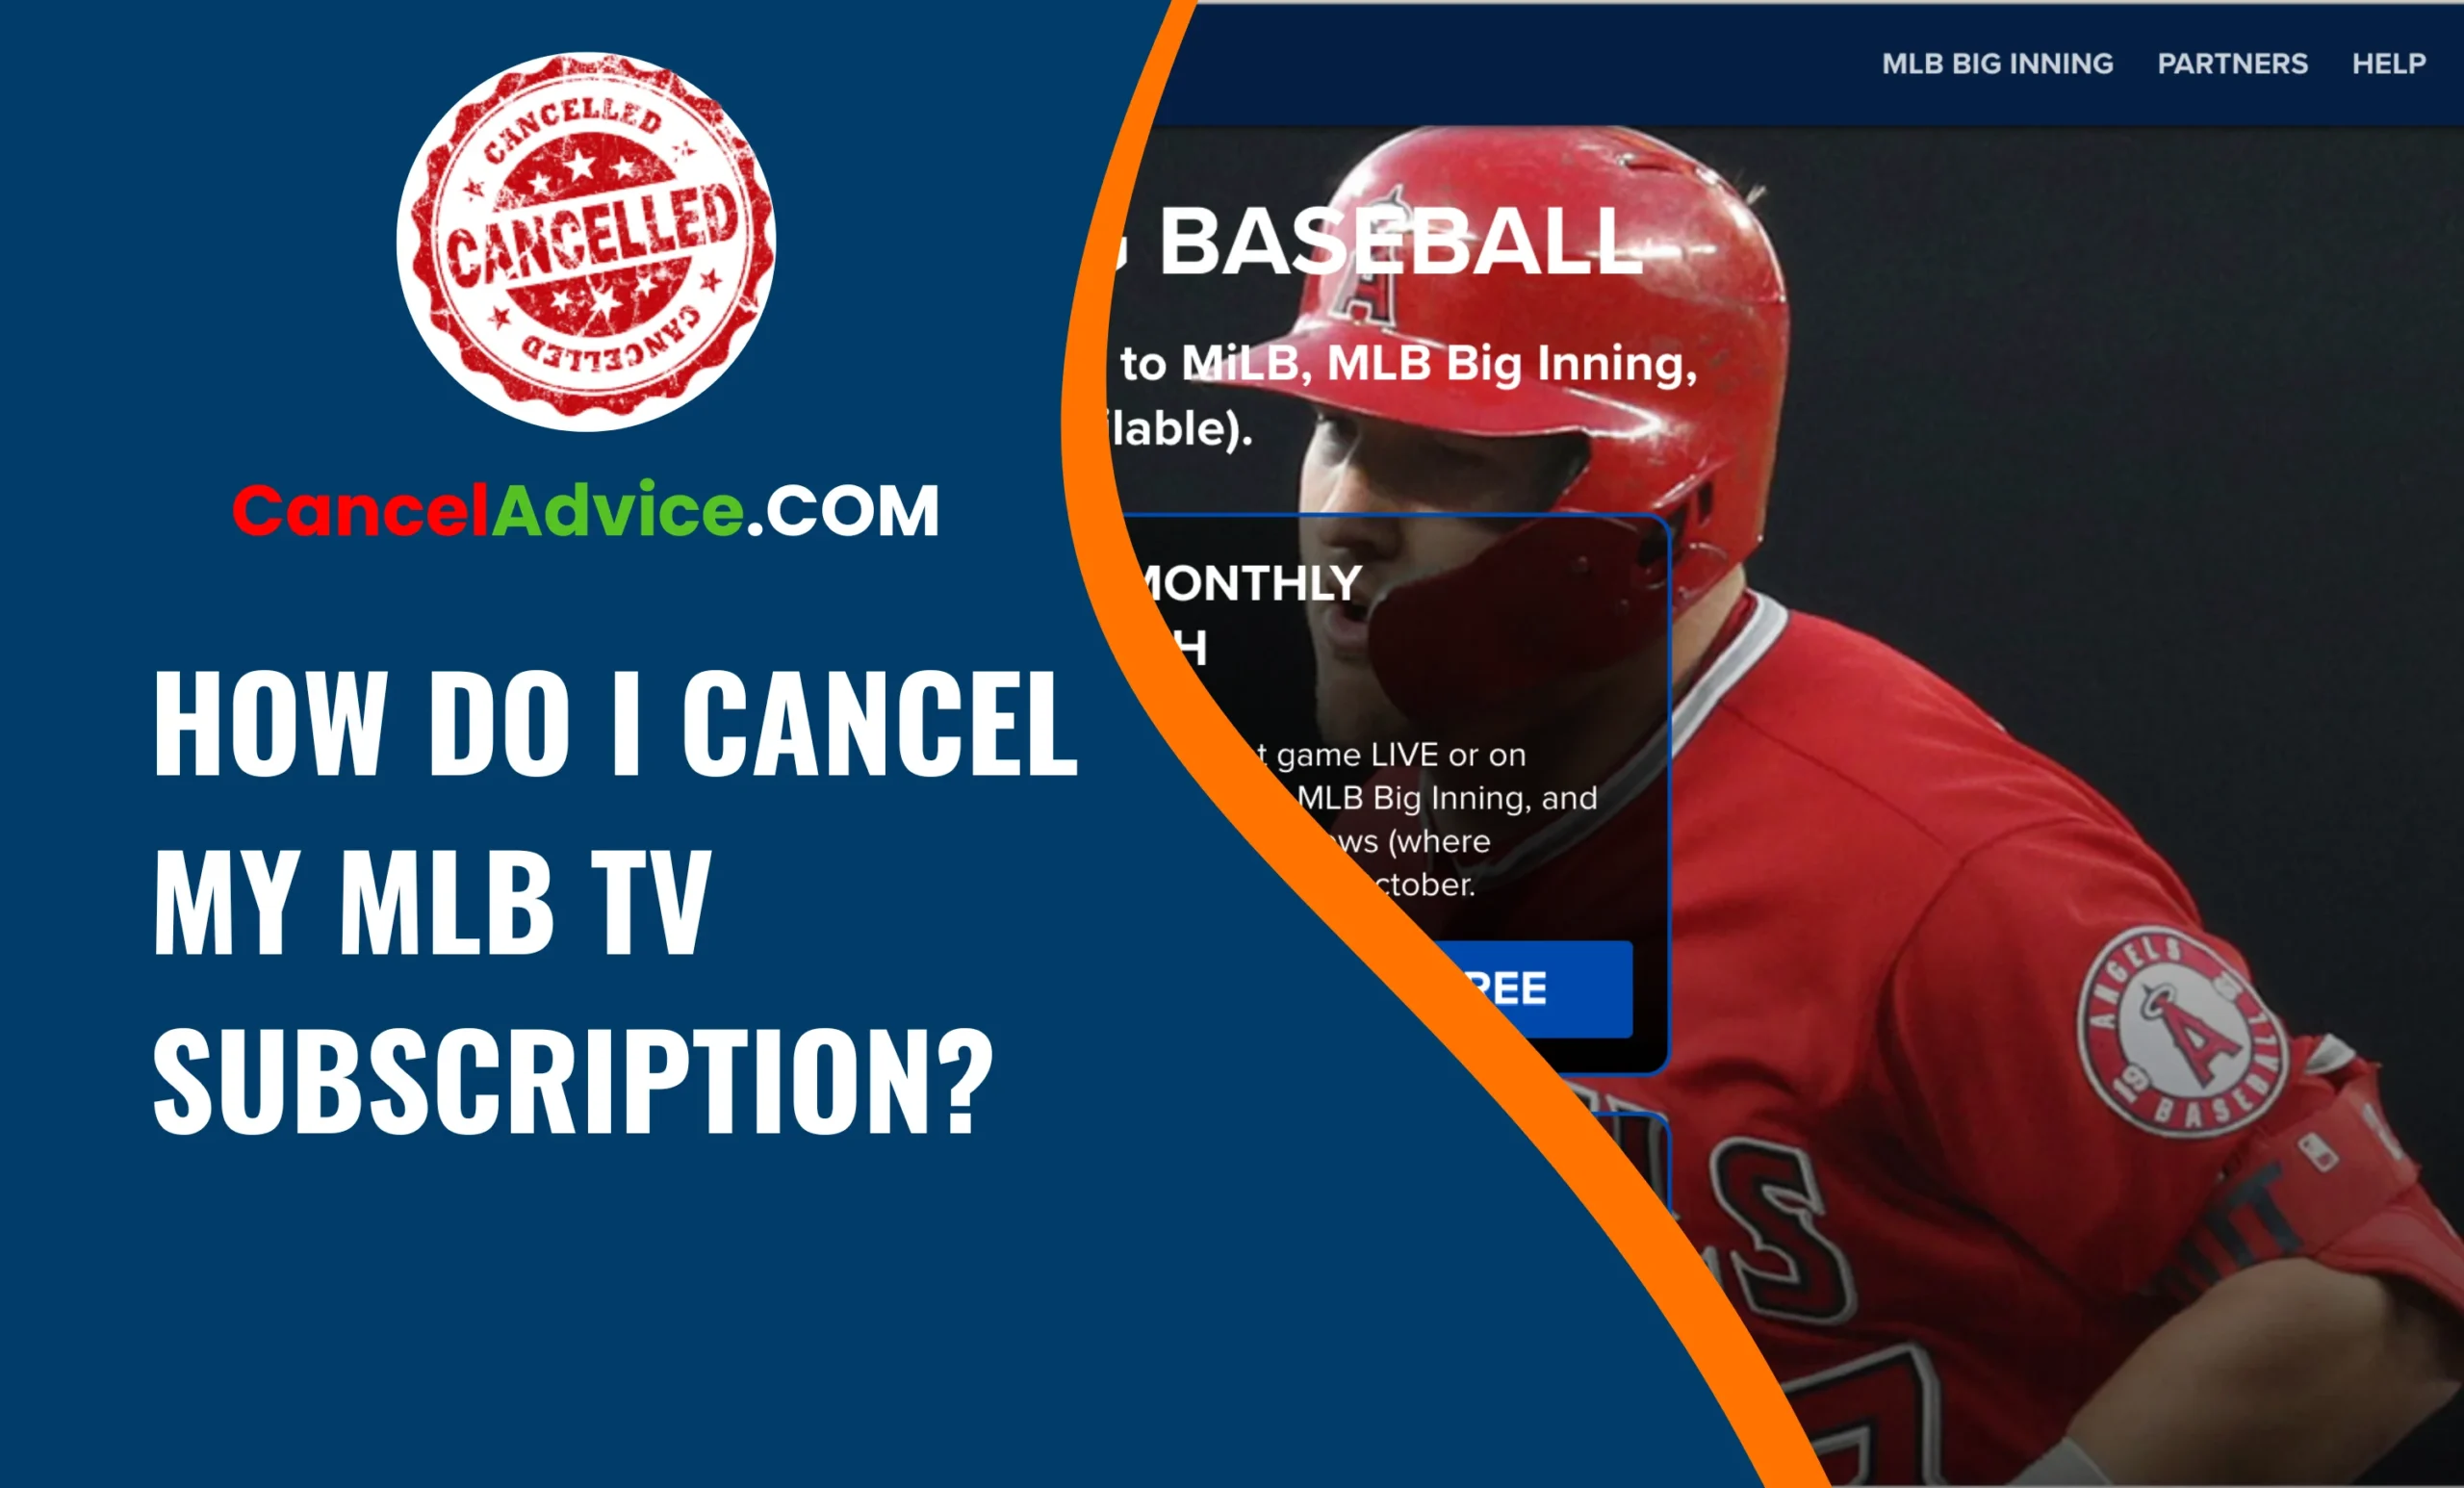 How Do I Cancel My MLB TV Subscription